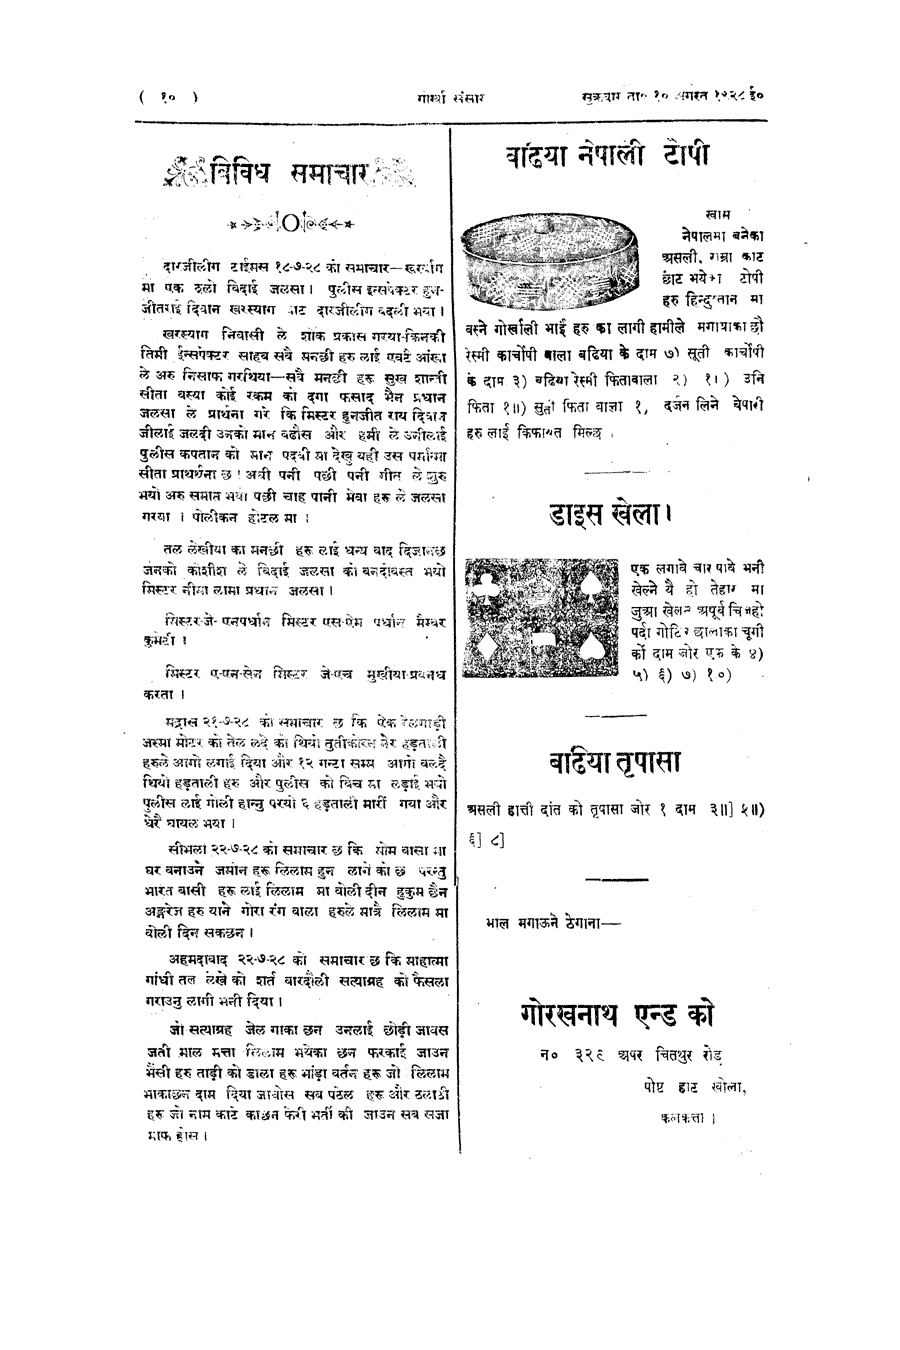 Gorkha Sansar, 10 Aug 1928, page 10